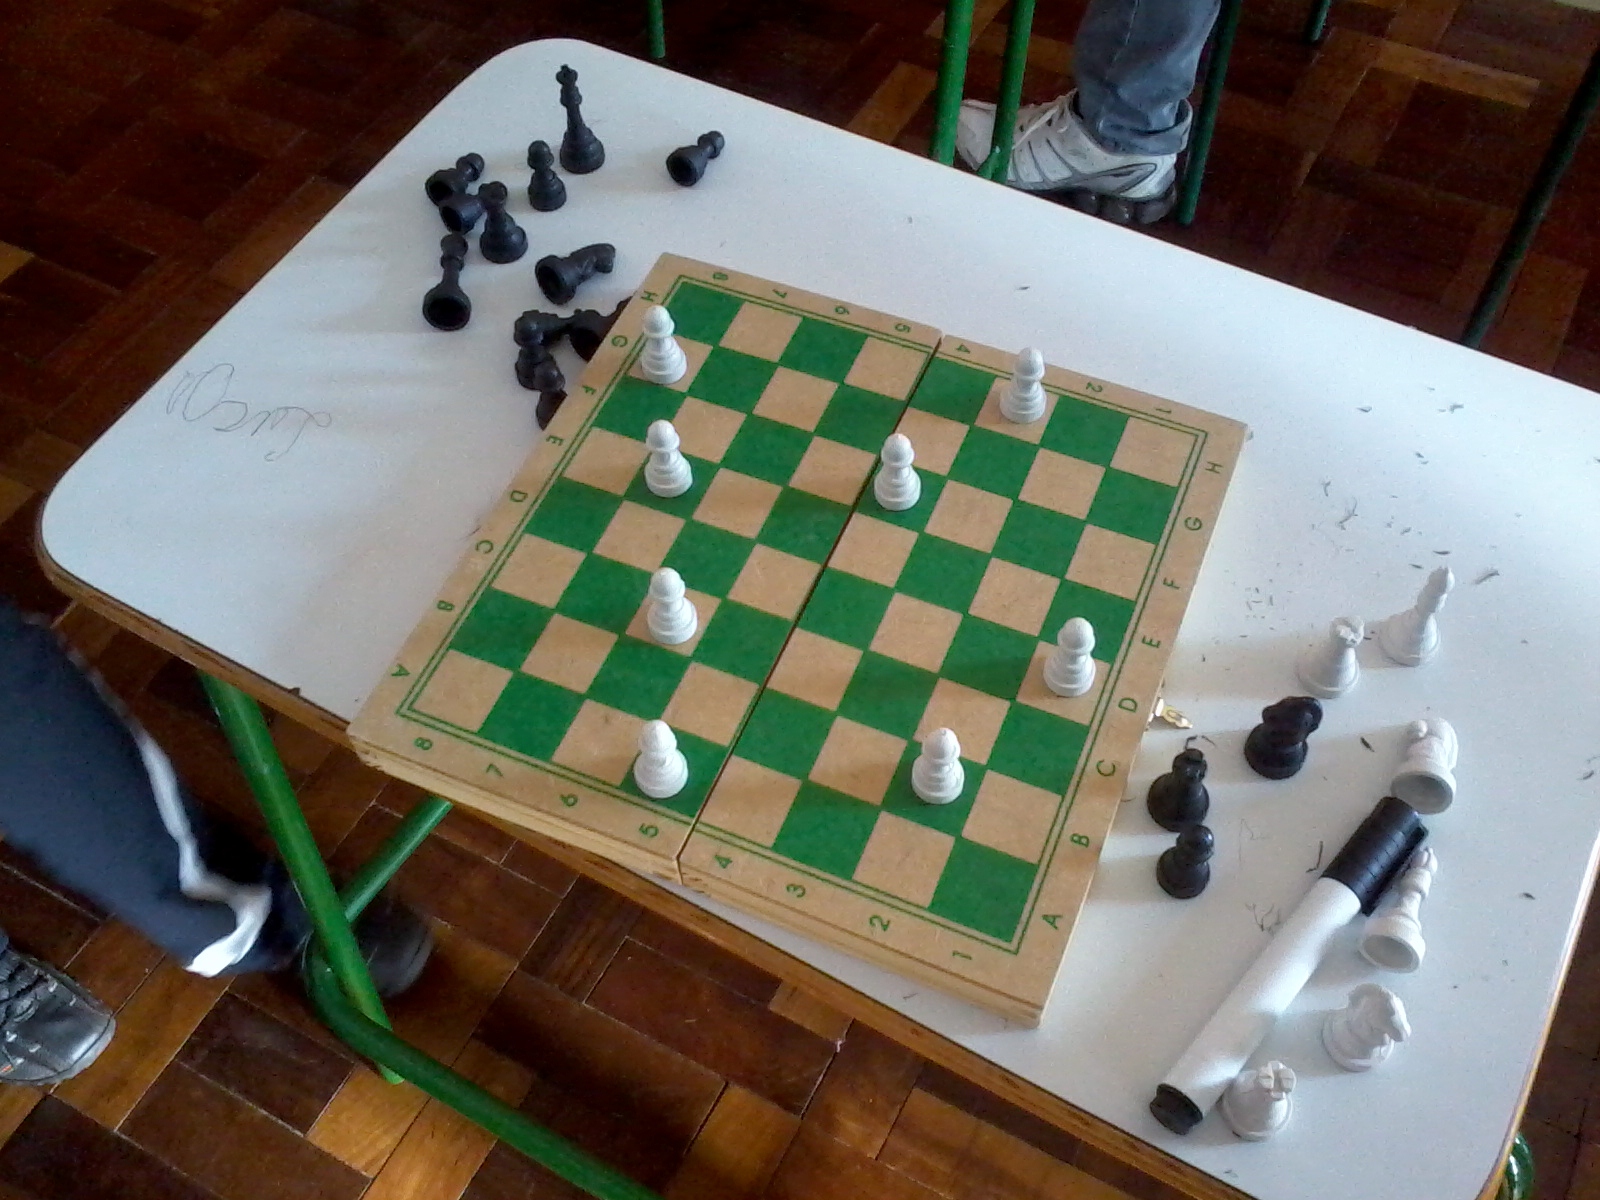 Projeto ensina matemática aplicada ao jogo de xadrez - Tribuna do